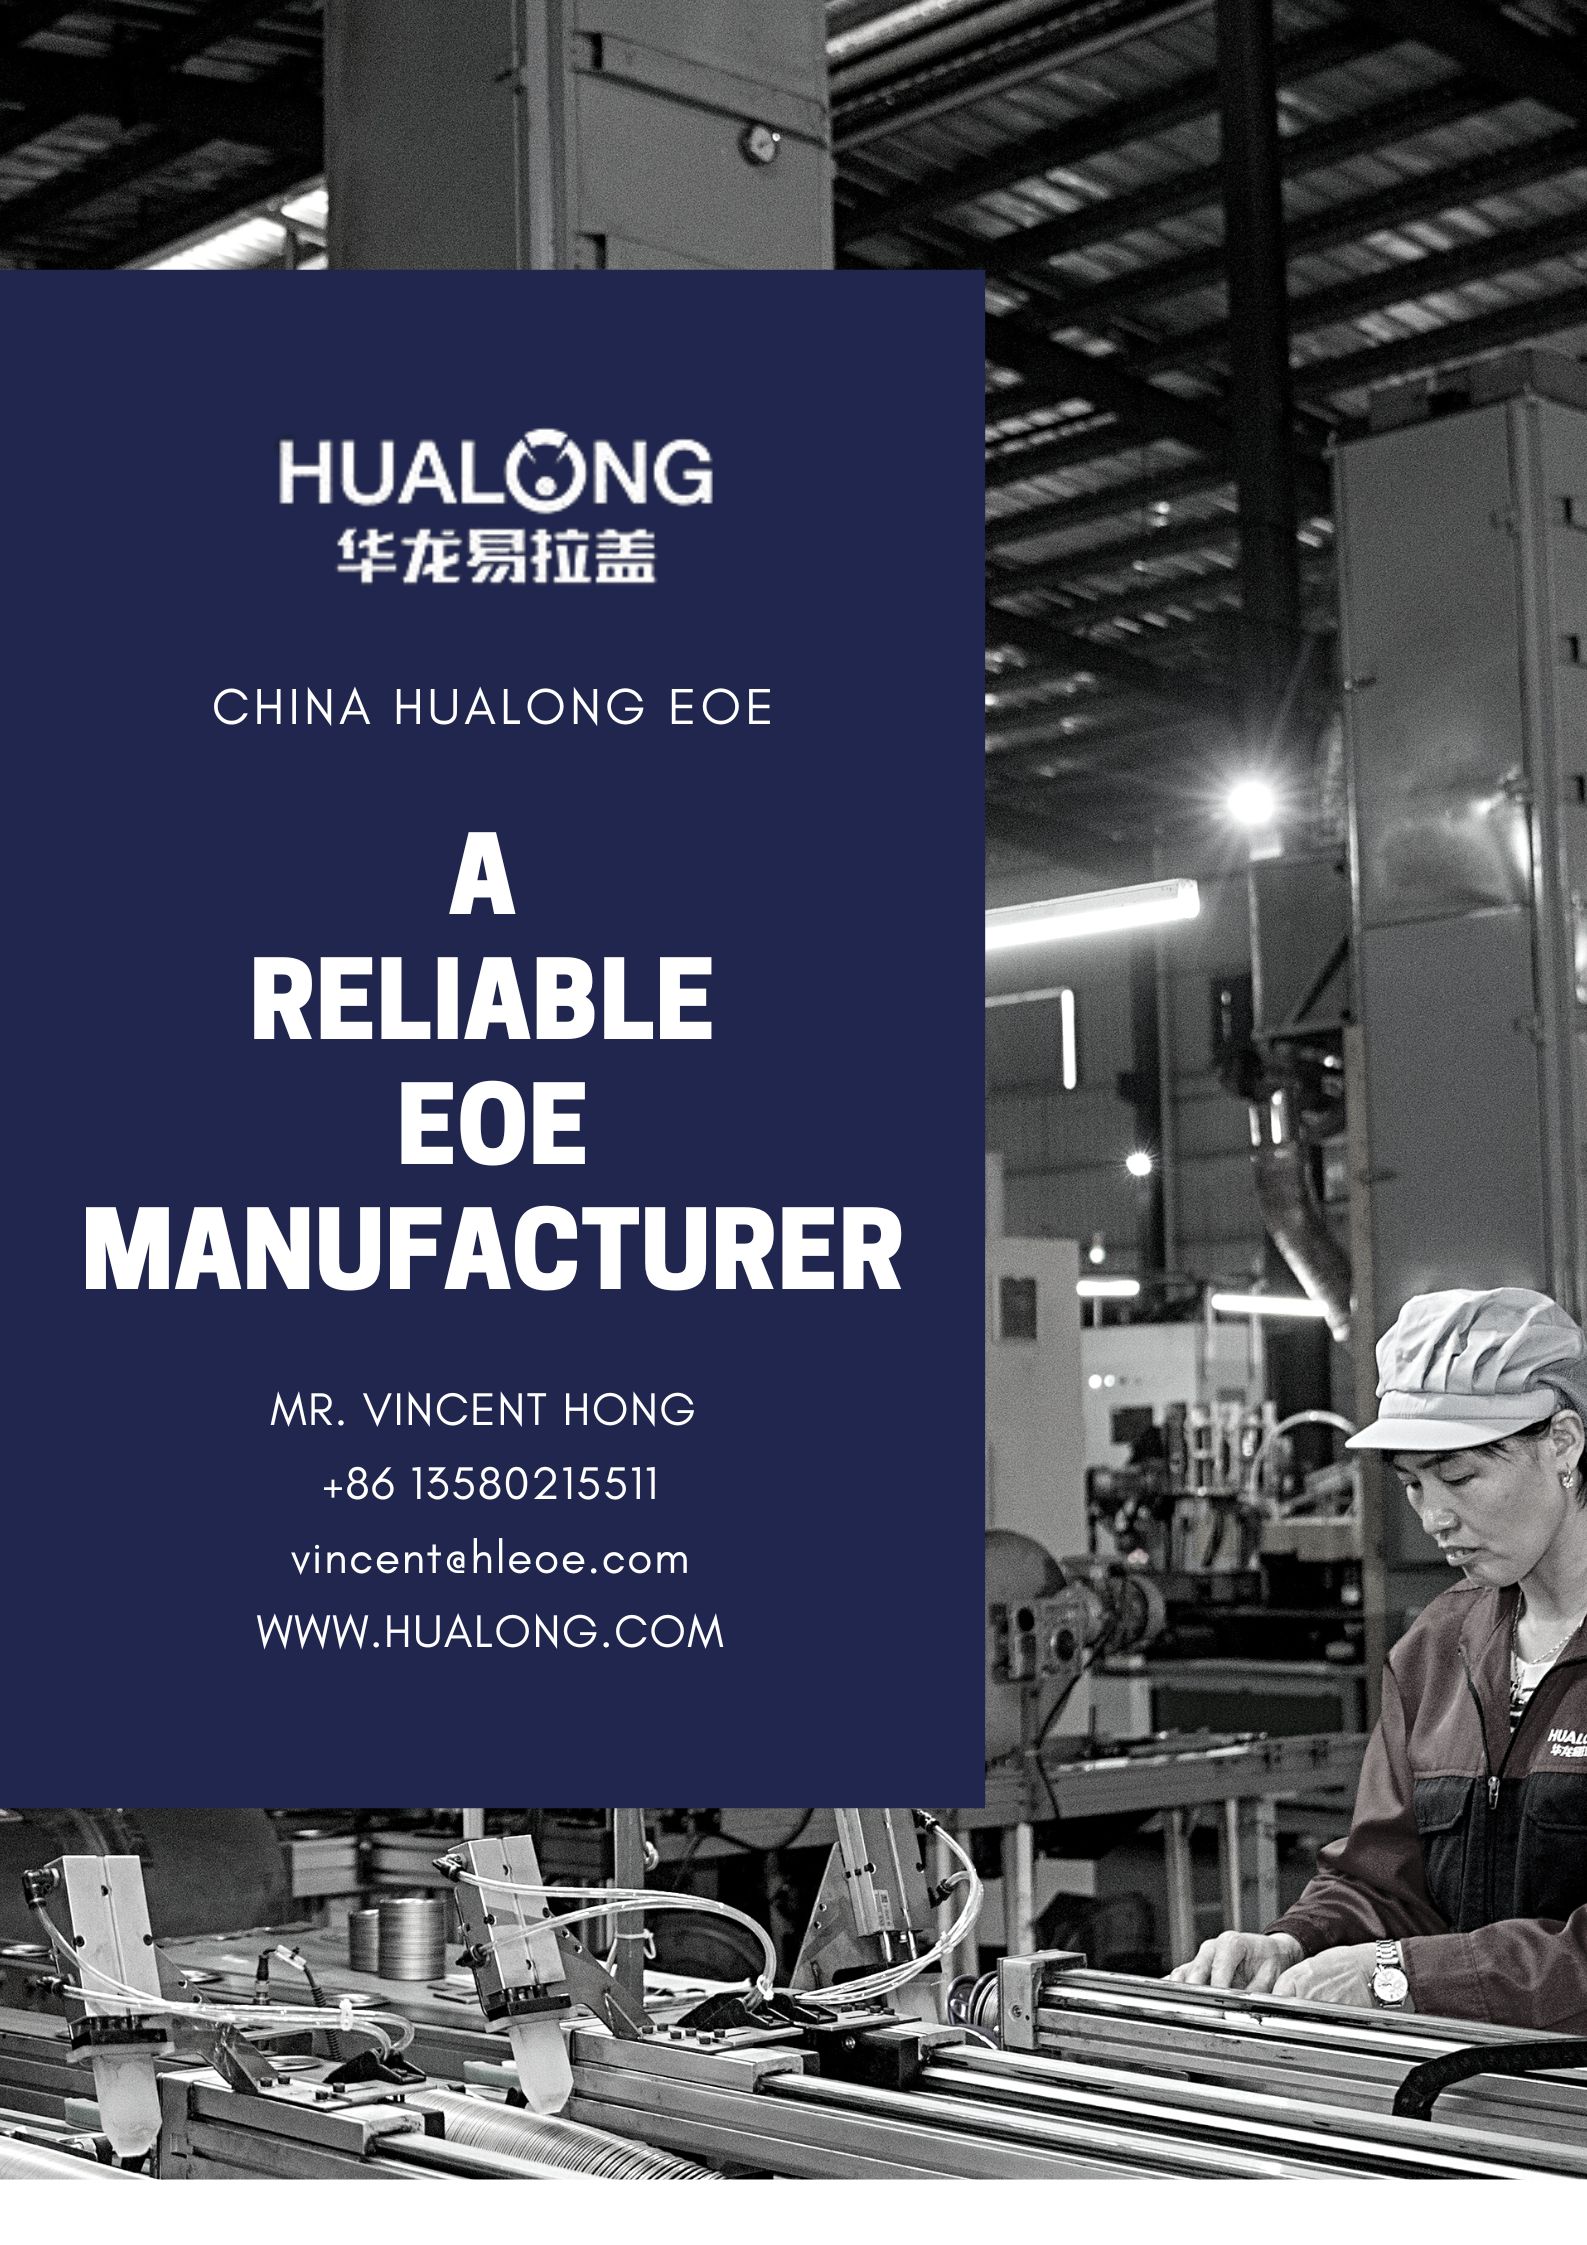 Choisissez Hualong EOE pour un partenariat d'approvisionnement fiable.